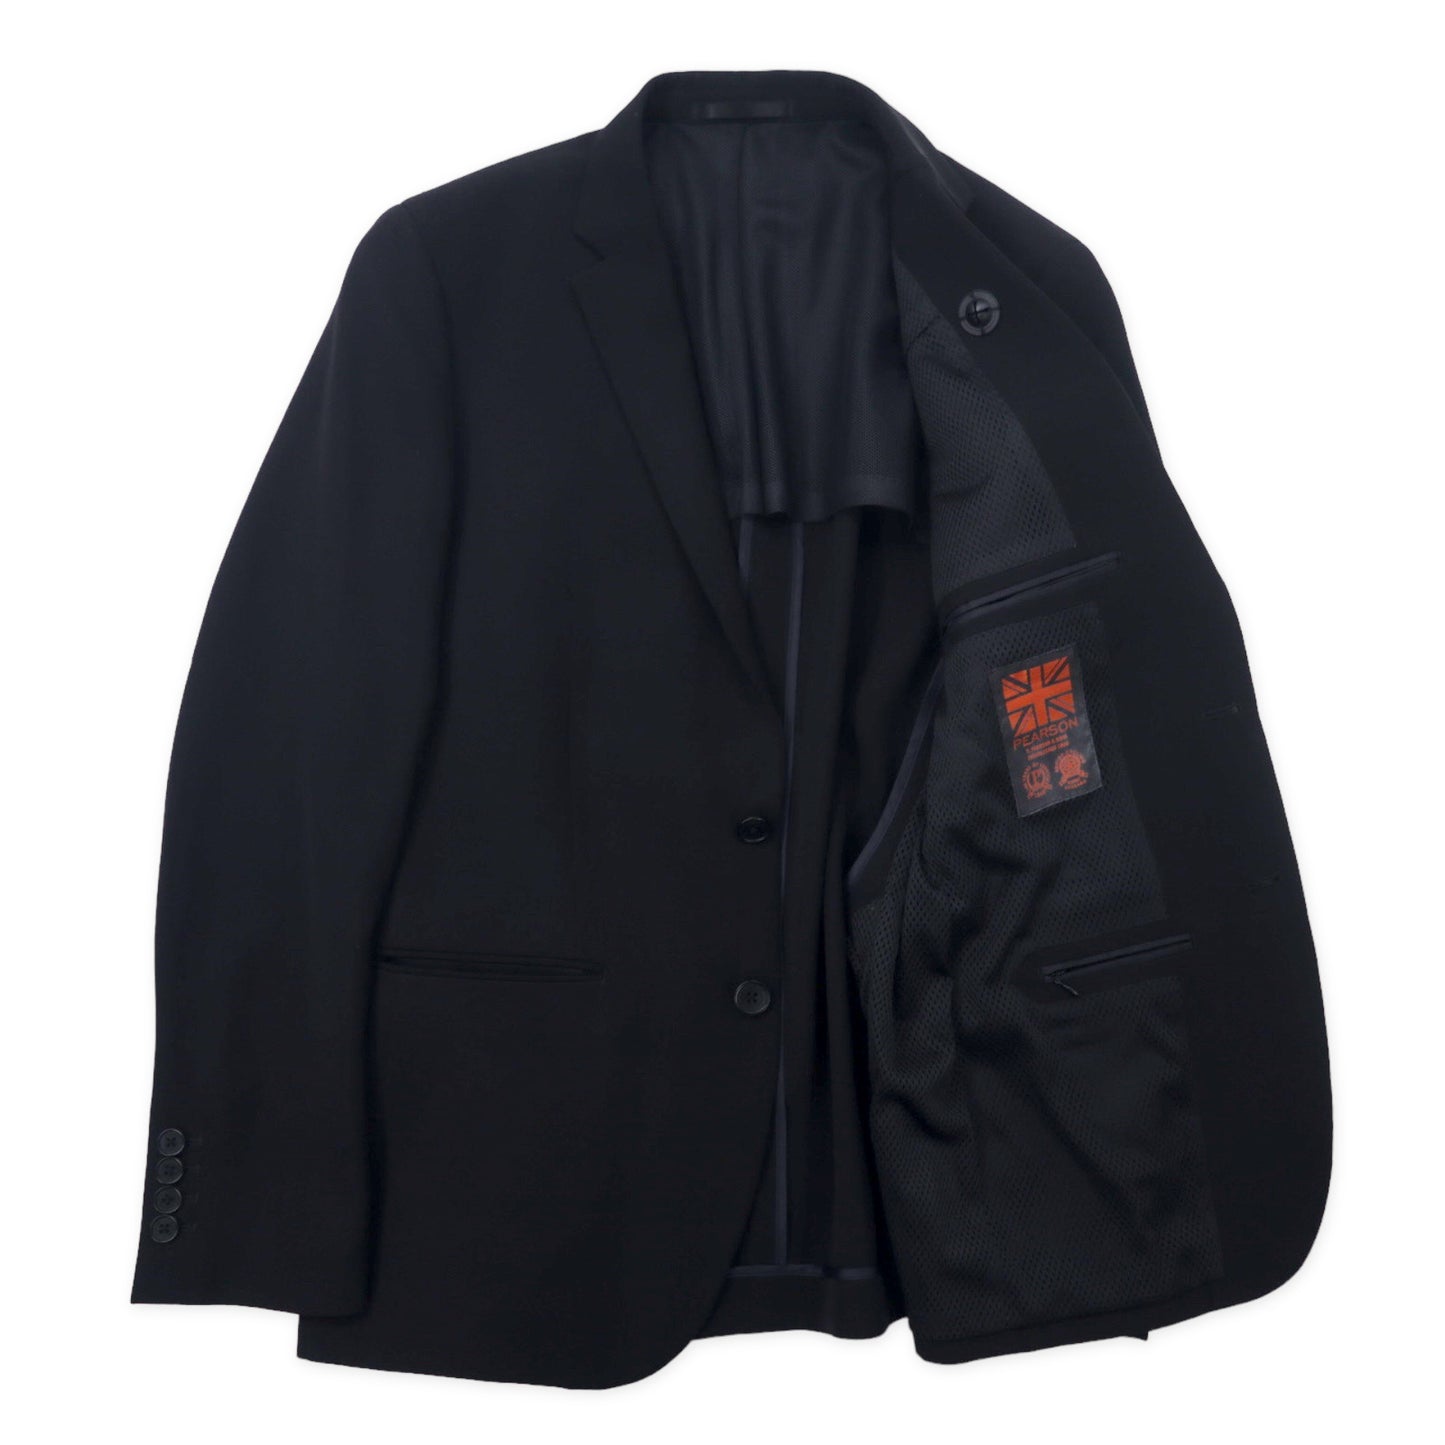 nano universe × Pearson 2B スーツ セットアップ 46 ブラック ポリエステル ストレッチ Cycling Suit